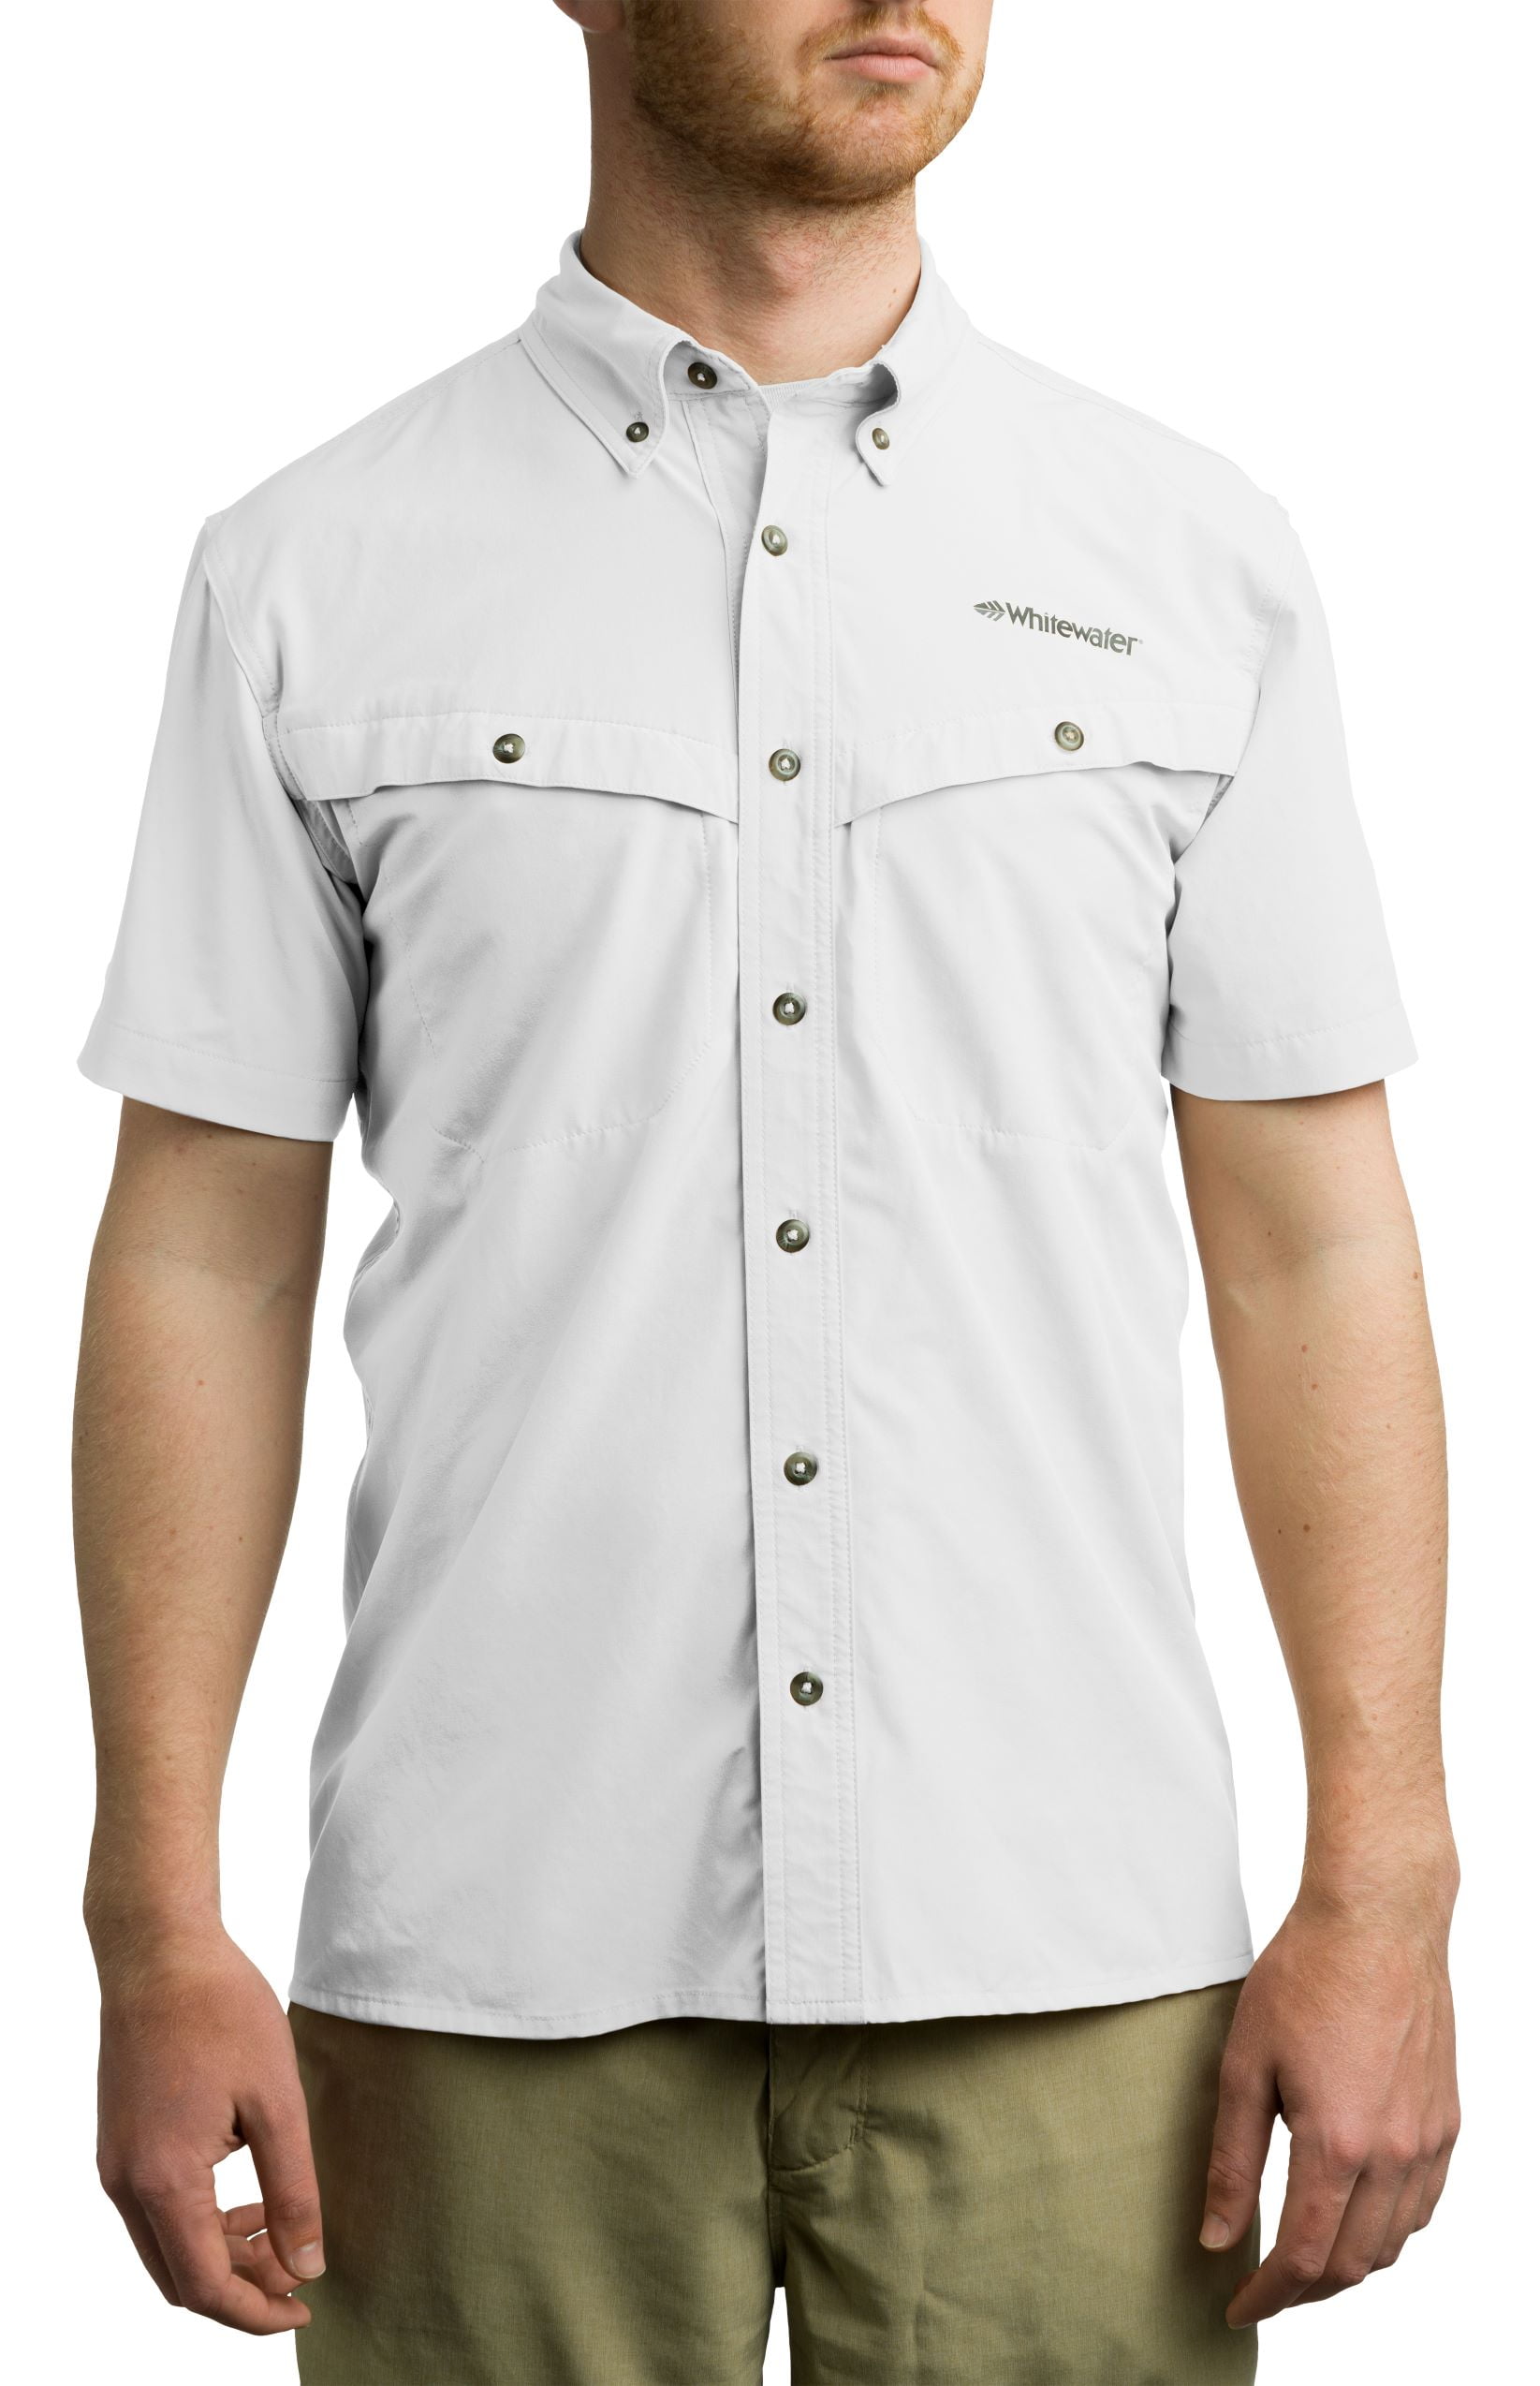 Whitewater Lightweight Moisture Wicking Short Sleeve Fishing Shirt with UPF  50 (White, Small) 